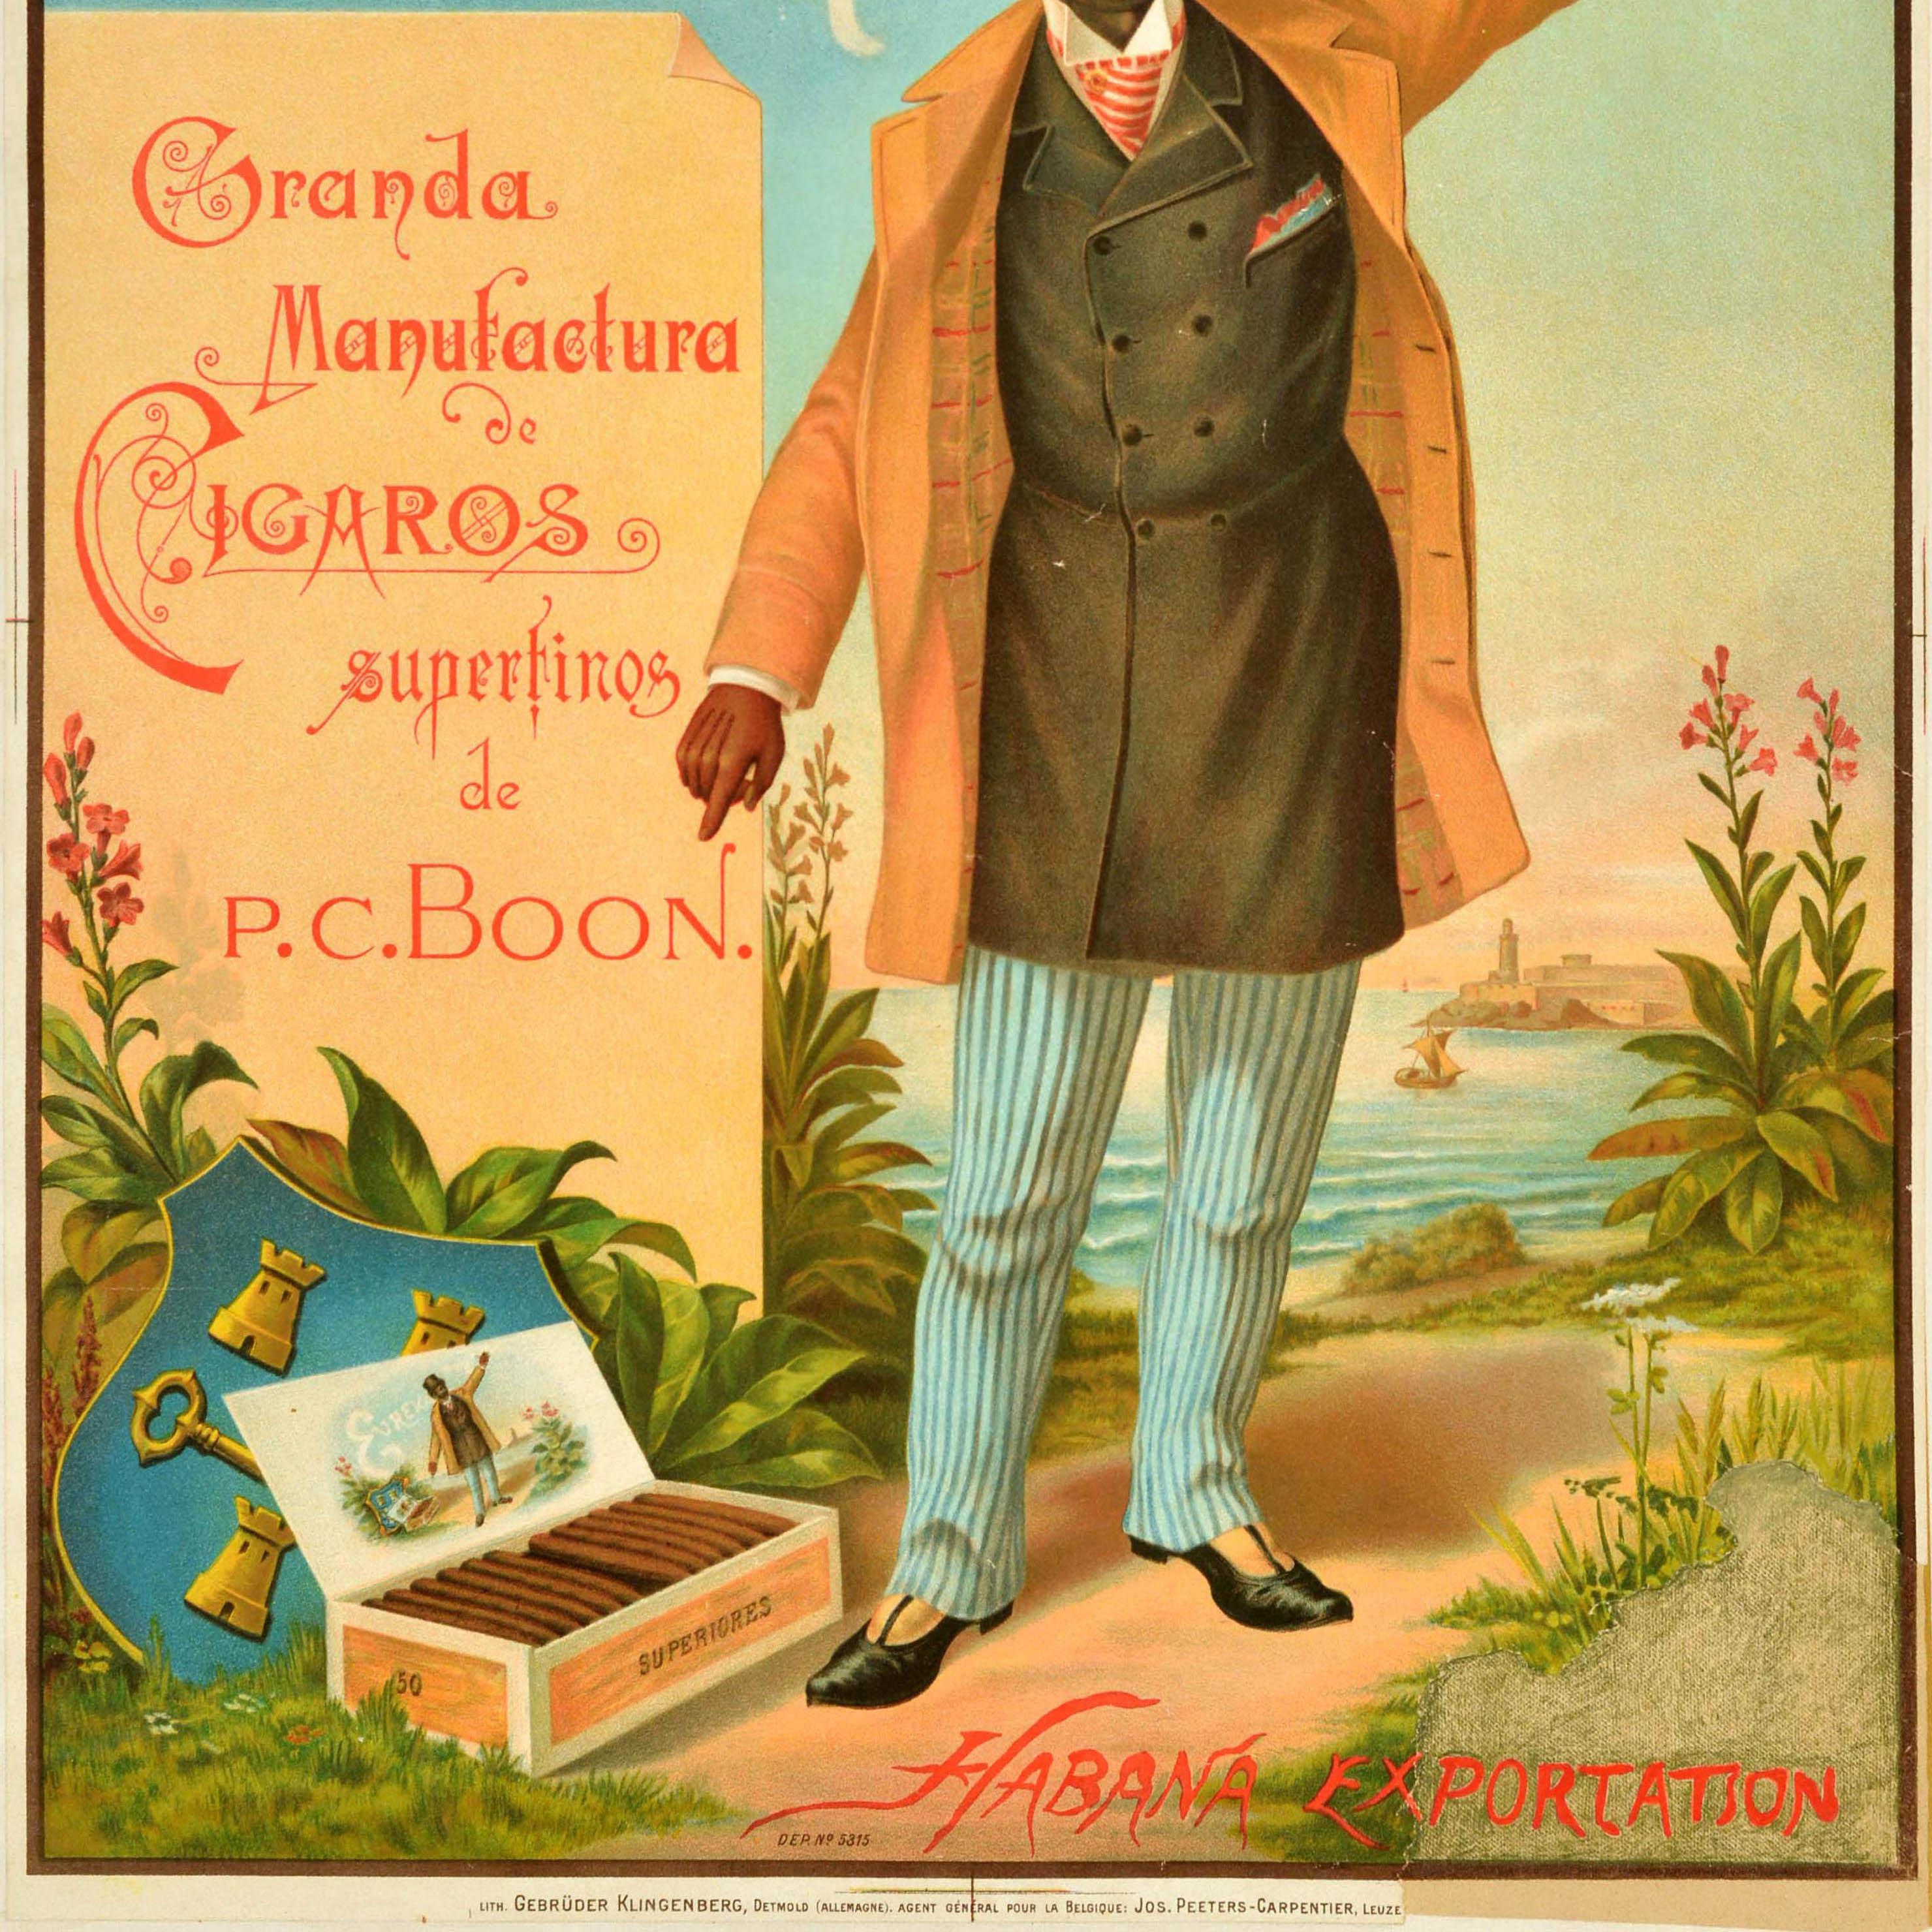 Originales antikes Werbeplakat für Eureka superfine Zigarren, die von P.C. hergestellt werden. Boon Havanna Exportation - Granda Manufactura de Cigaros superfinos de P.C. Boon Habana Exportation - zeigt einen lächelnden Mann mit Zylinder,